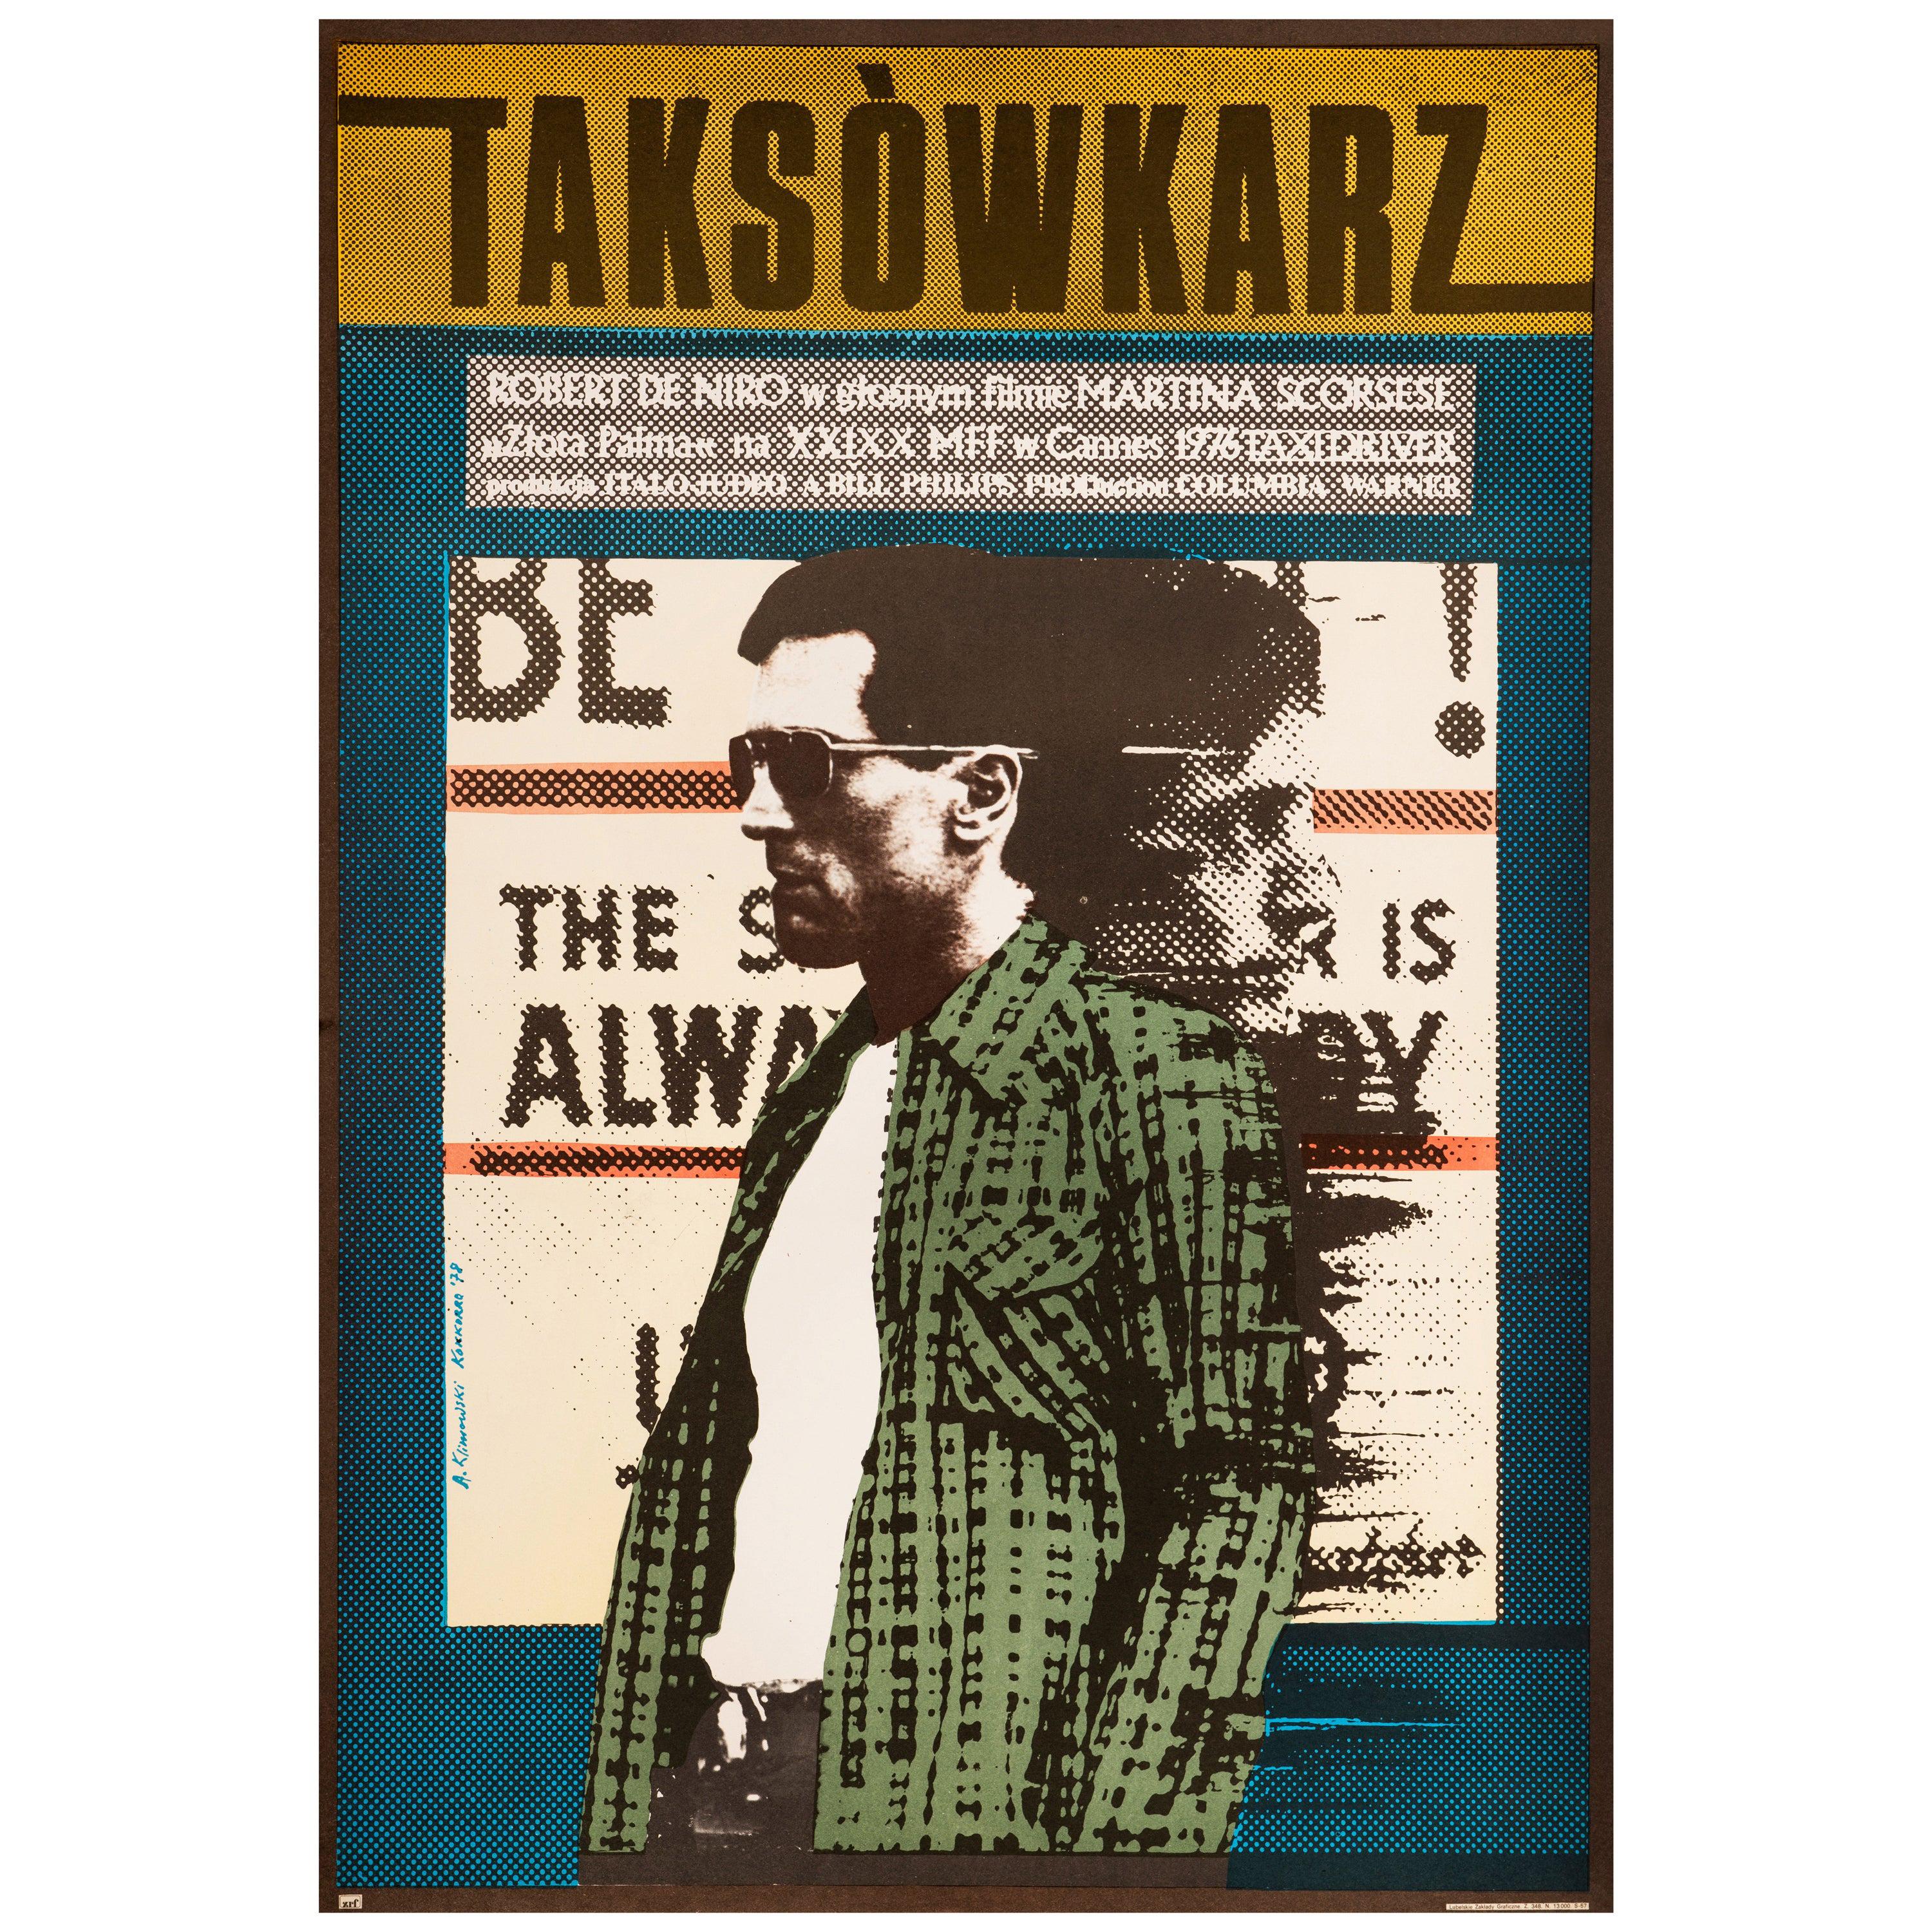 'Taxi Driver' Original Vintage Movie Poster by Andrzej Klimowski, Polish, 1978